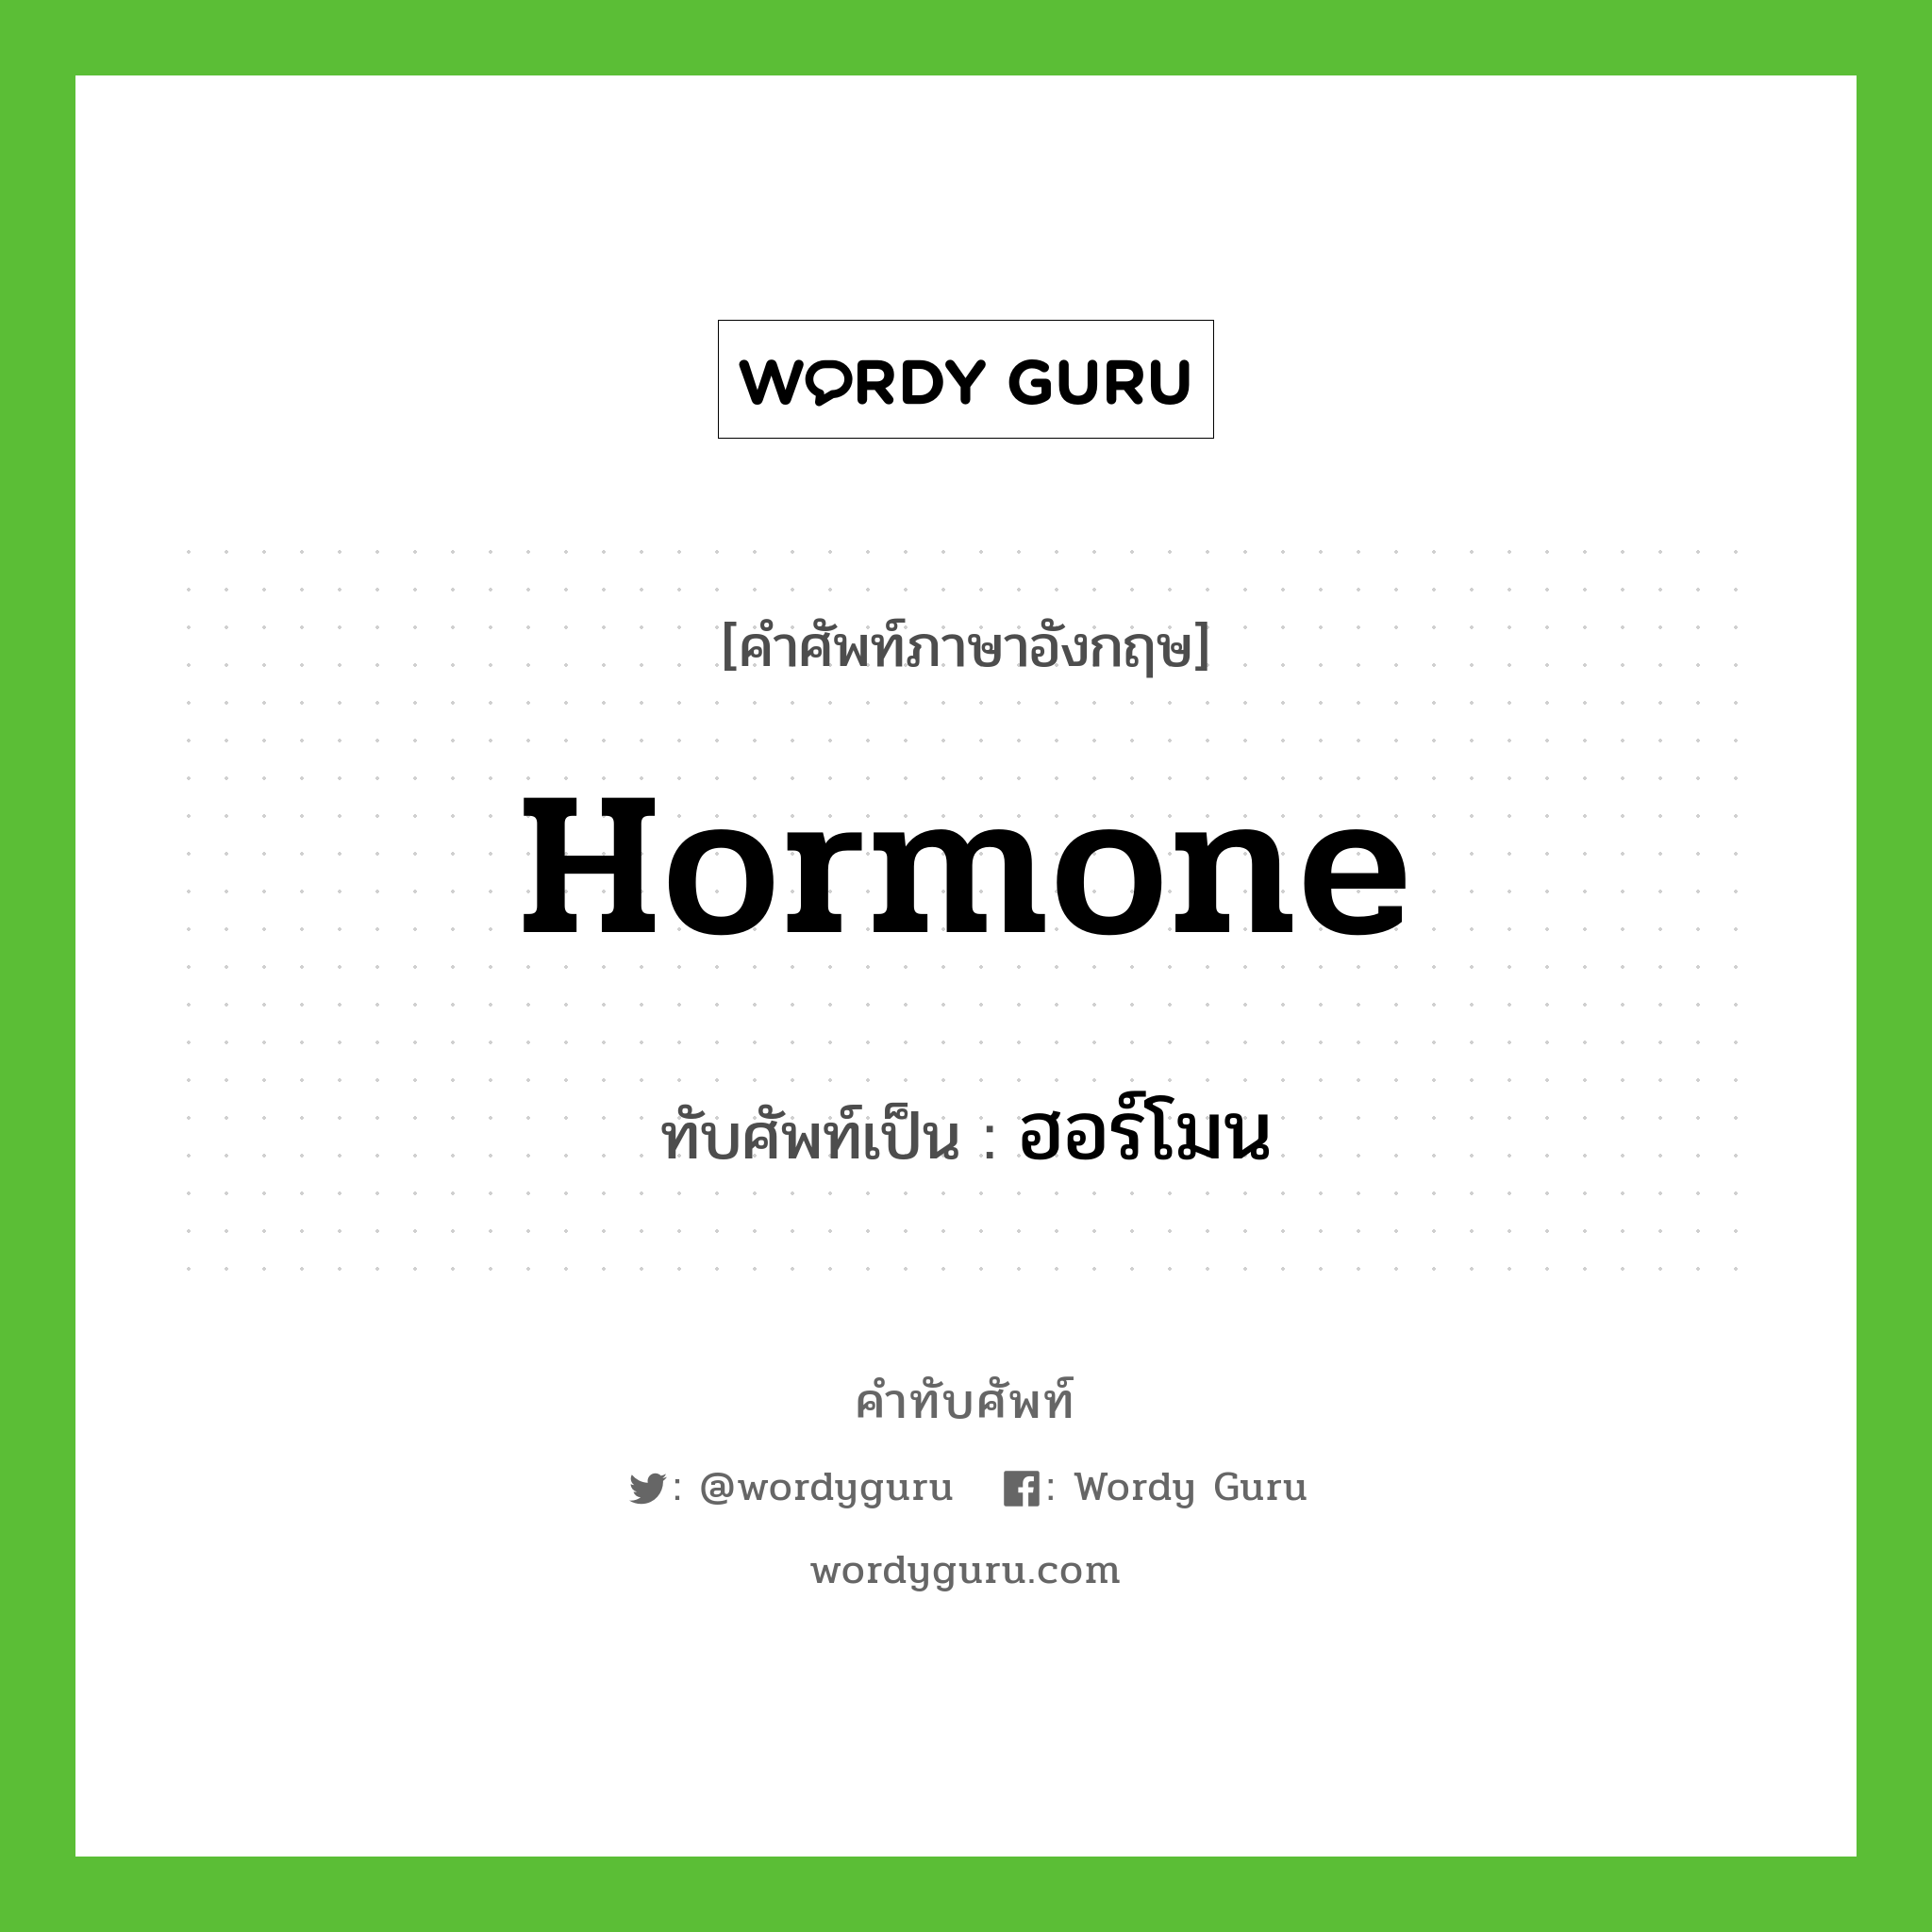 ฮอร์โมน เขียนอย่างไร?, คำศัพท์ภาษาอังกฤษ ฮอร์โมน ทับศัพท์เป็น hormone